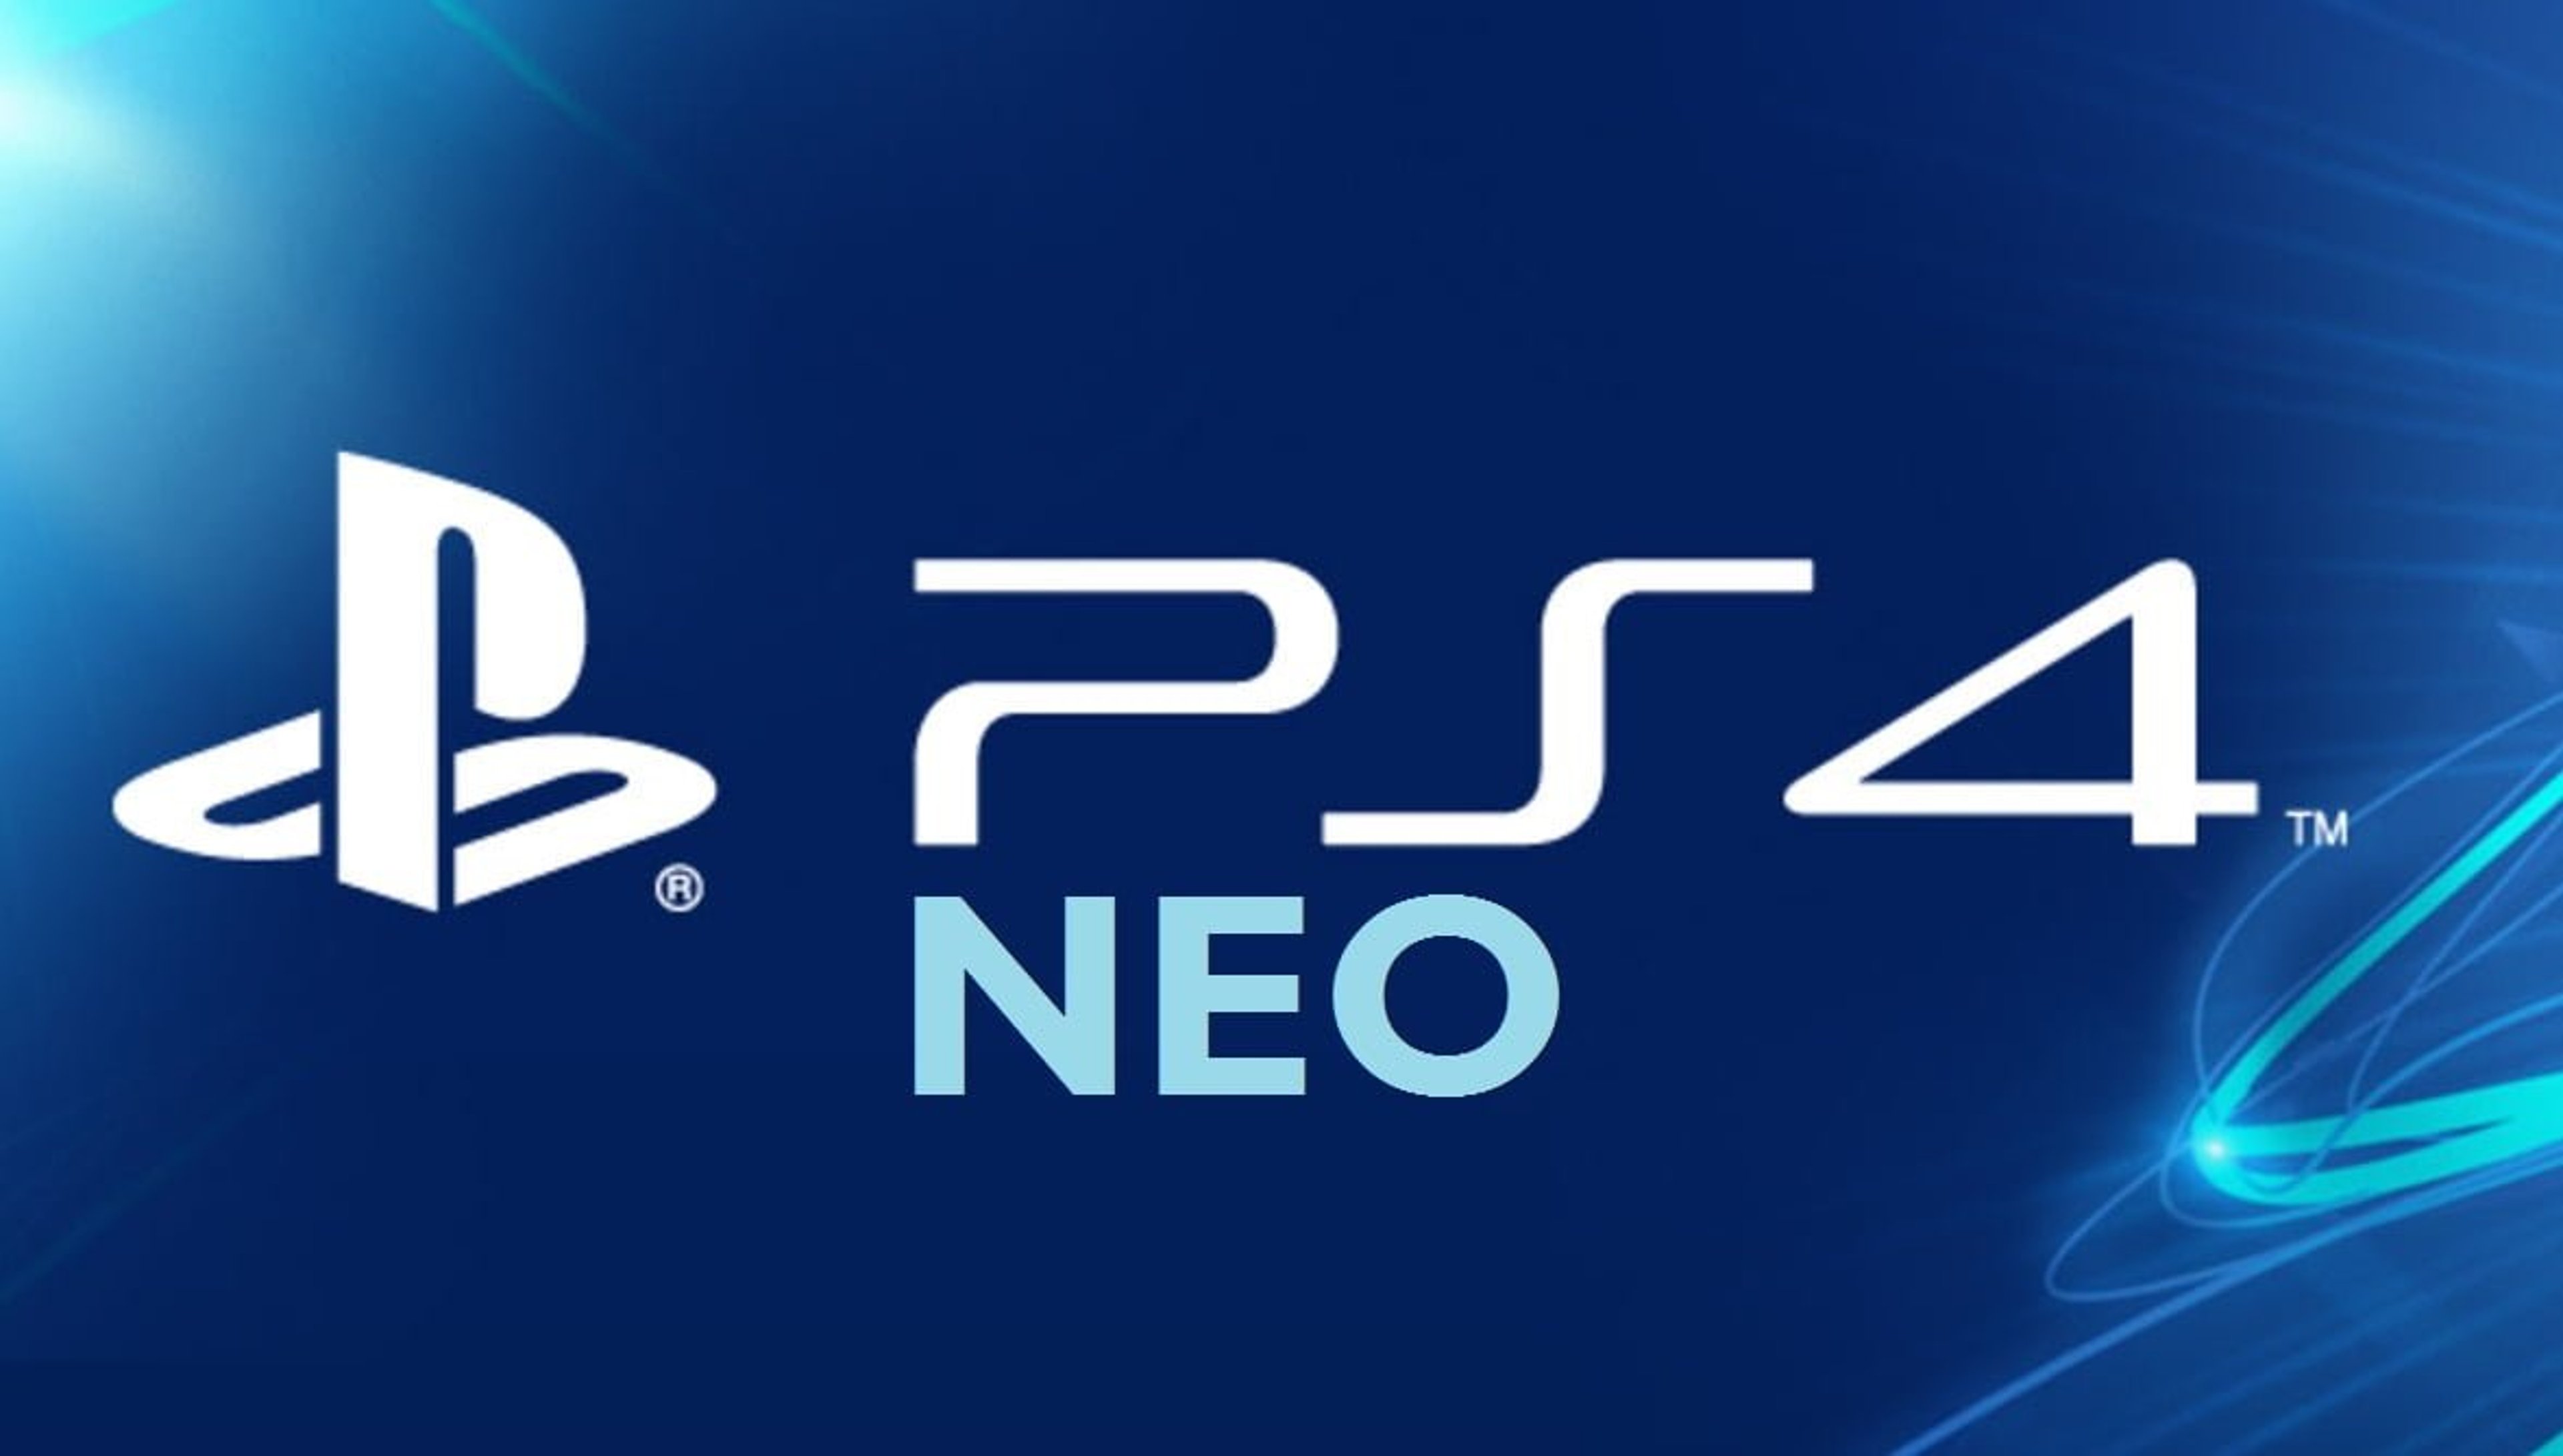 Specifiche PS4 Neo svelate